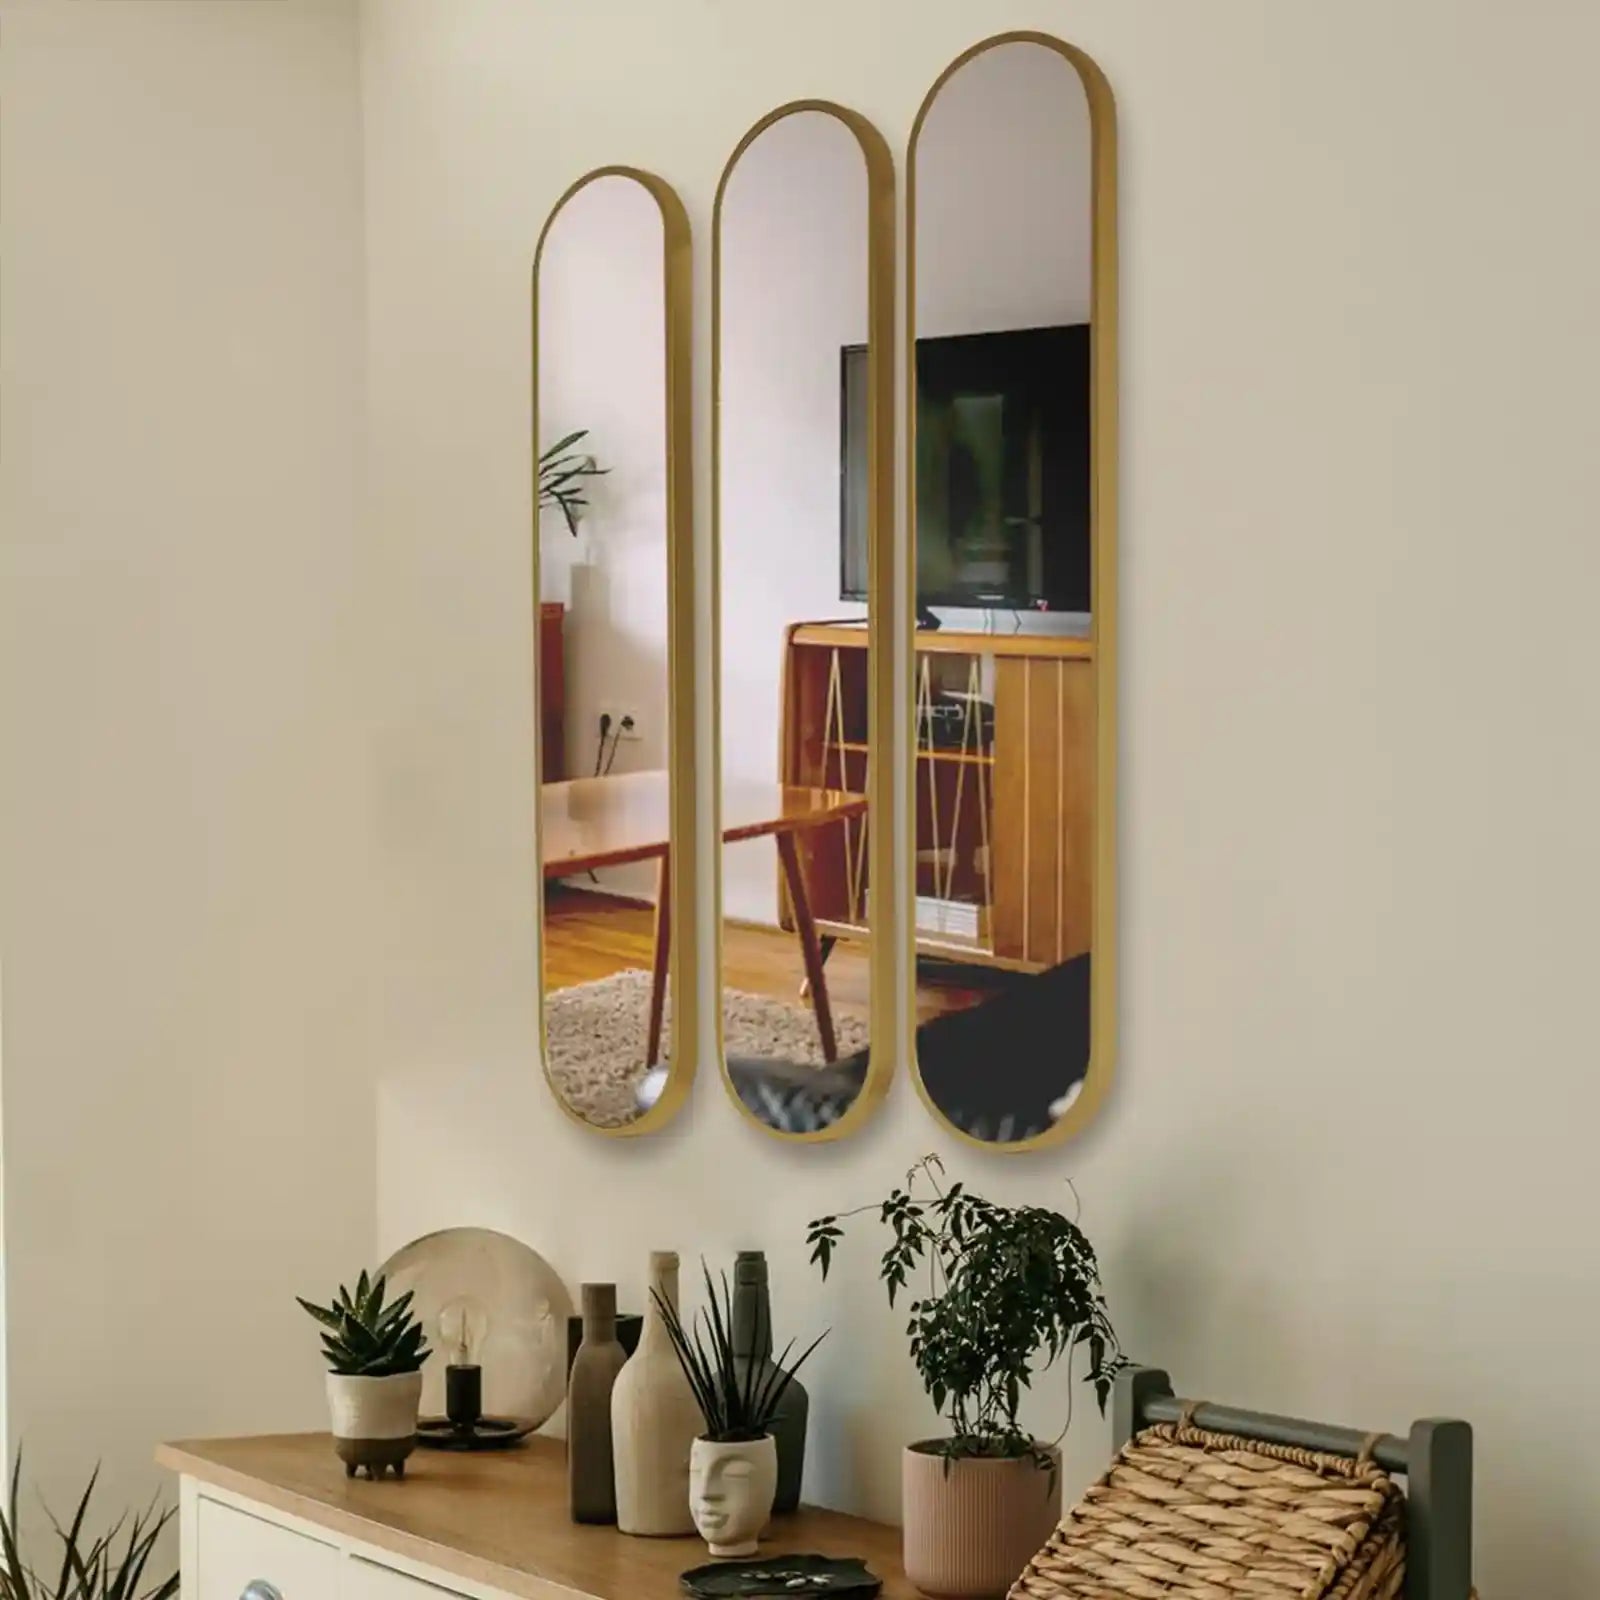 Juego de 3 espejos dorados ovalados decorativos, espejo de pared dorado moderno de 40 "x 8" para el hogar, el baño y la sala de estar